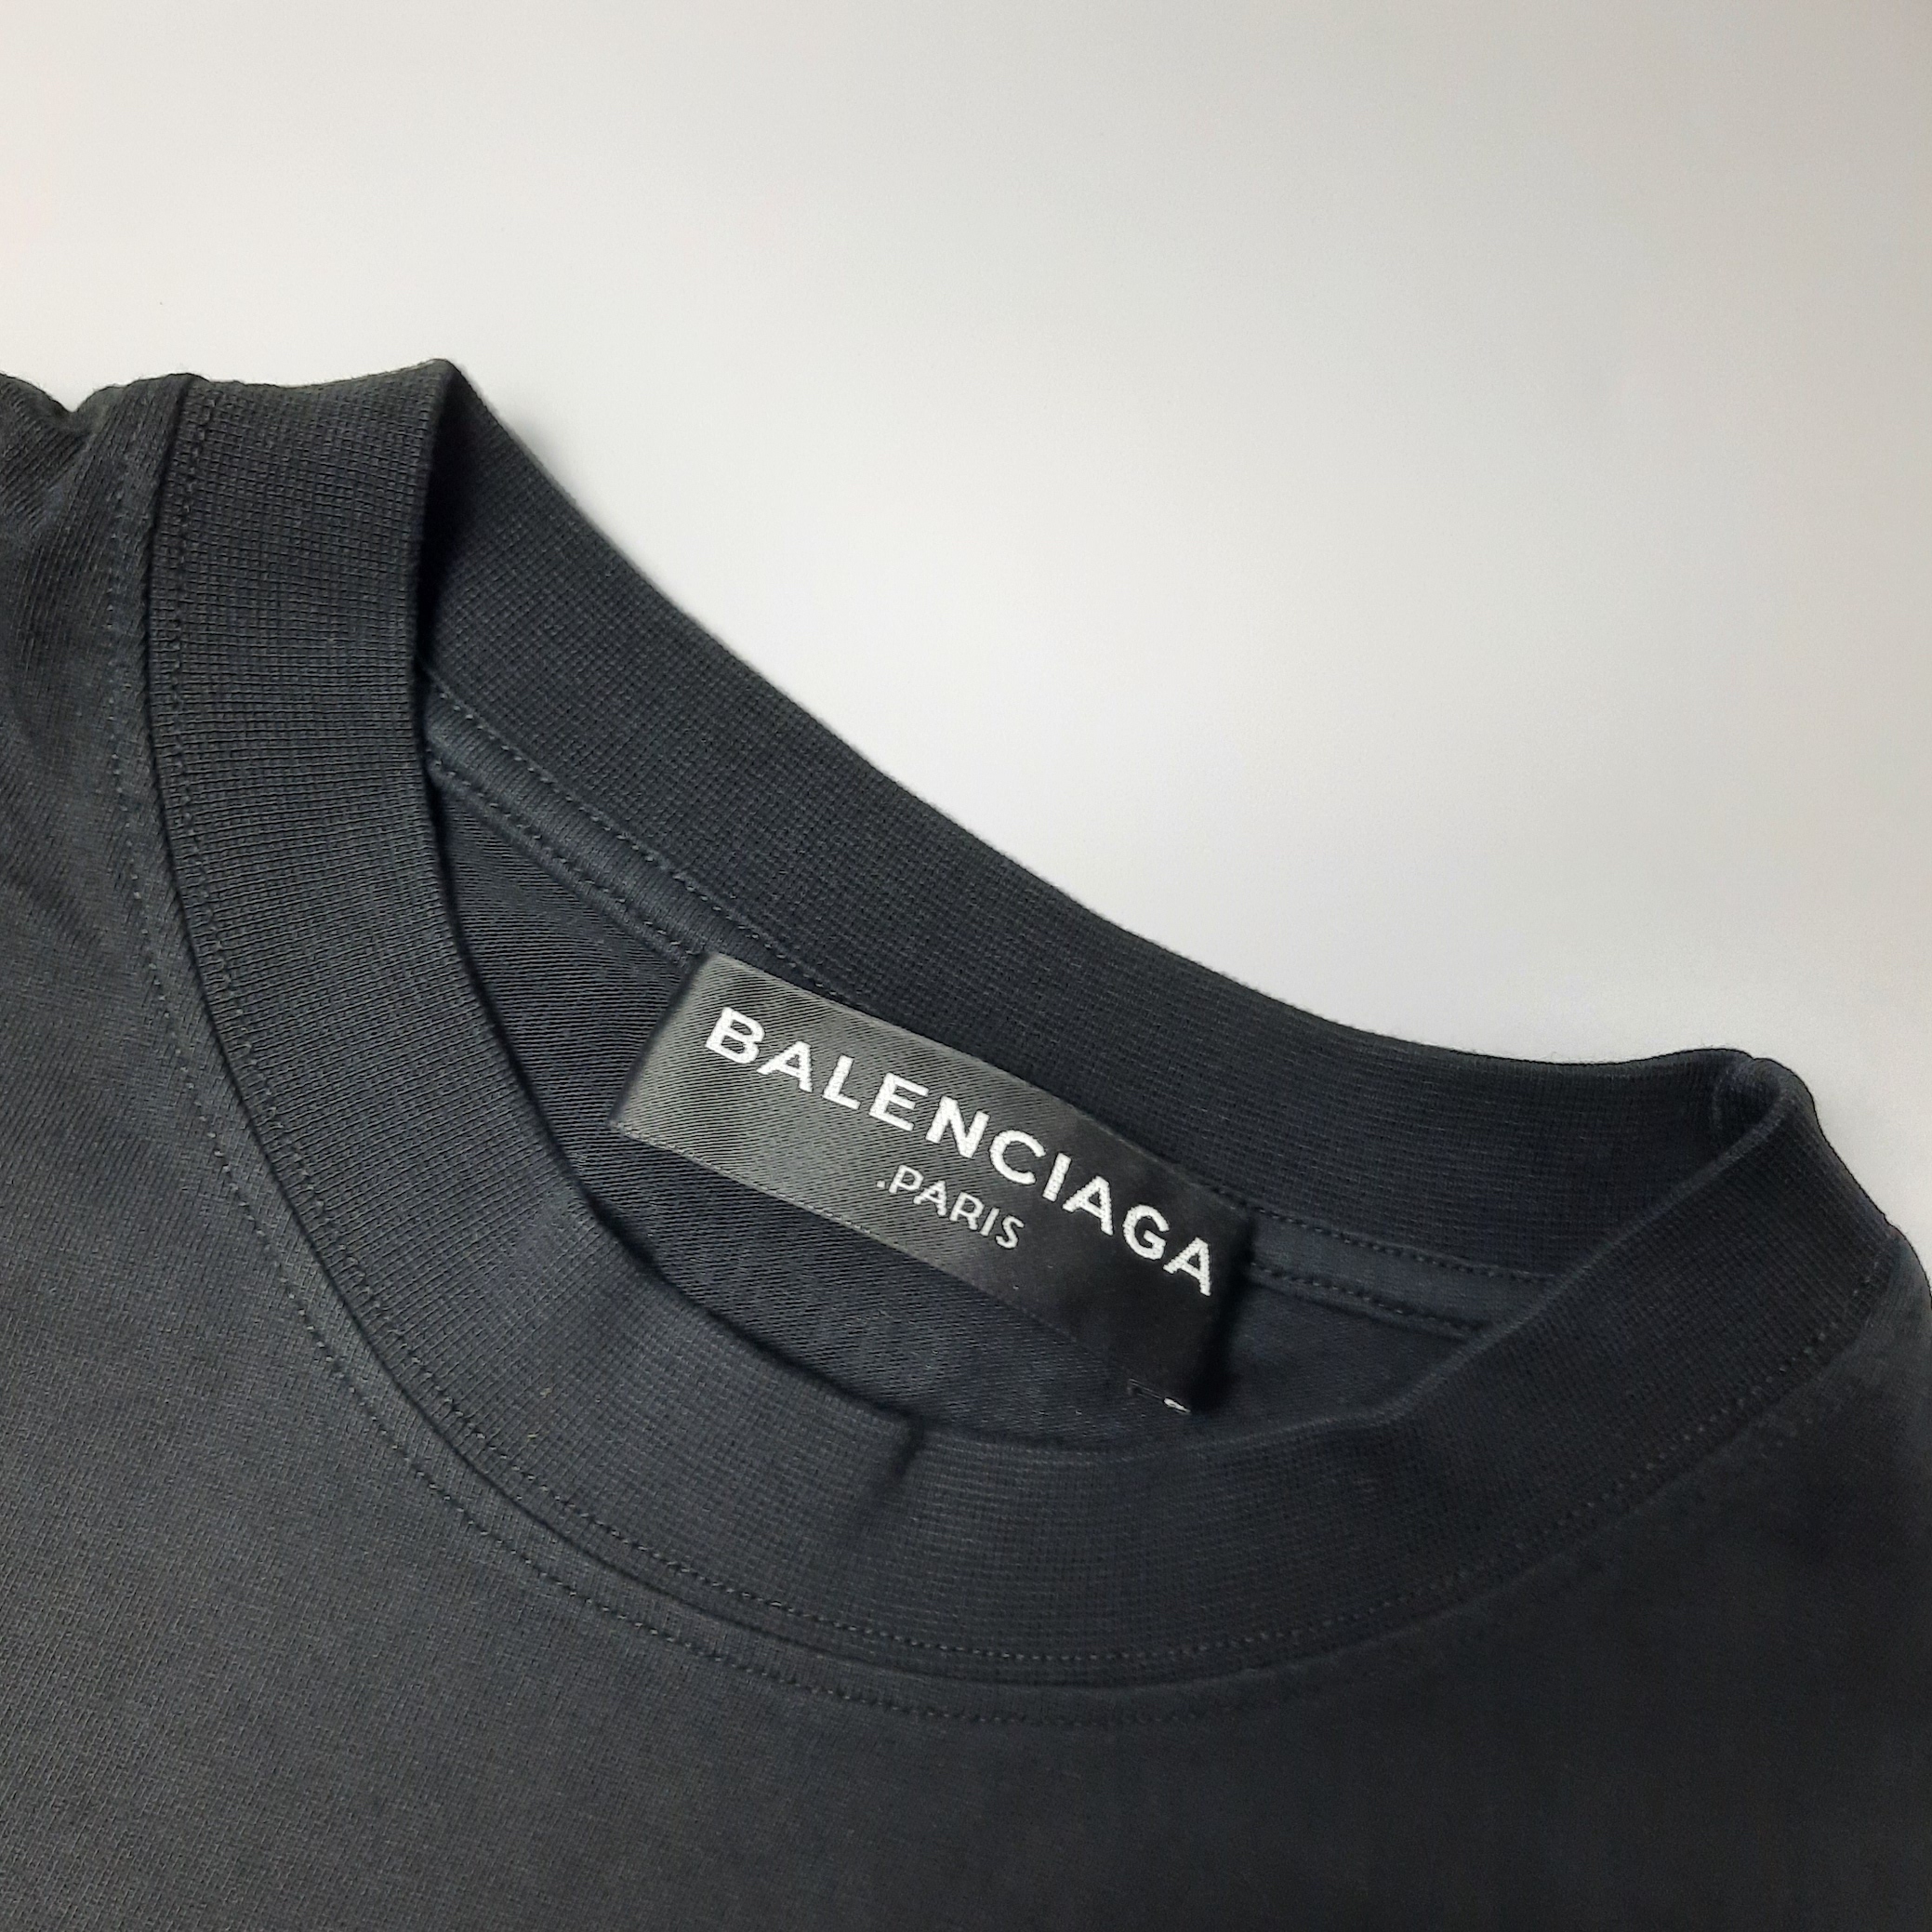 Balenciaga Paris T Shirt - Authenticated Luxury Designer